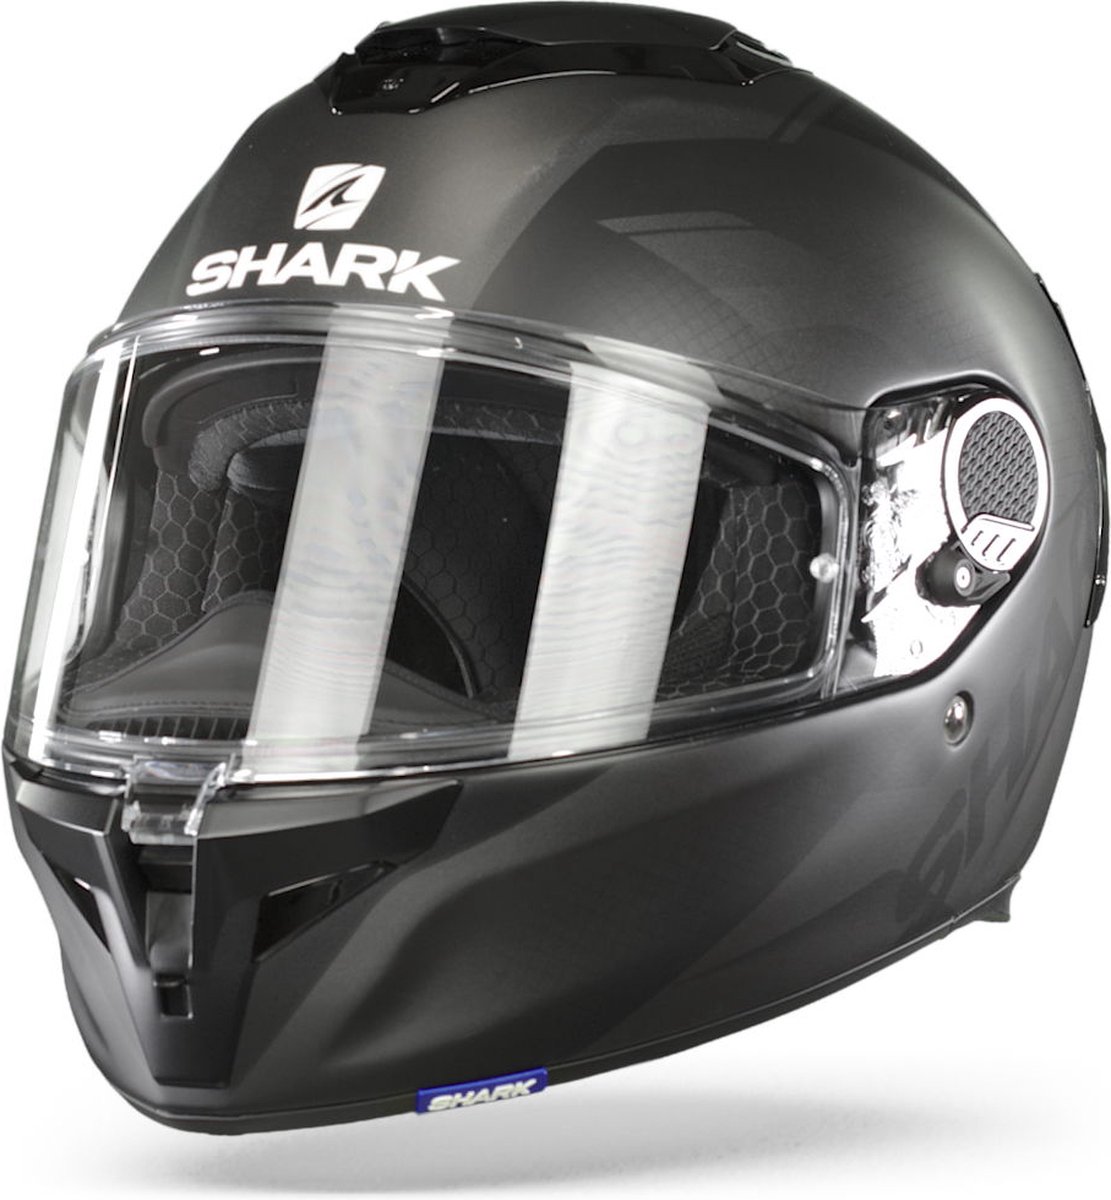 Shark Spartan Gt Blank Mat Bcl. Micr. Black Anthracite Anthracite Kaa XL - Maat XL - Helm